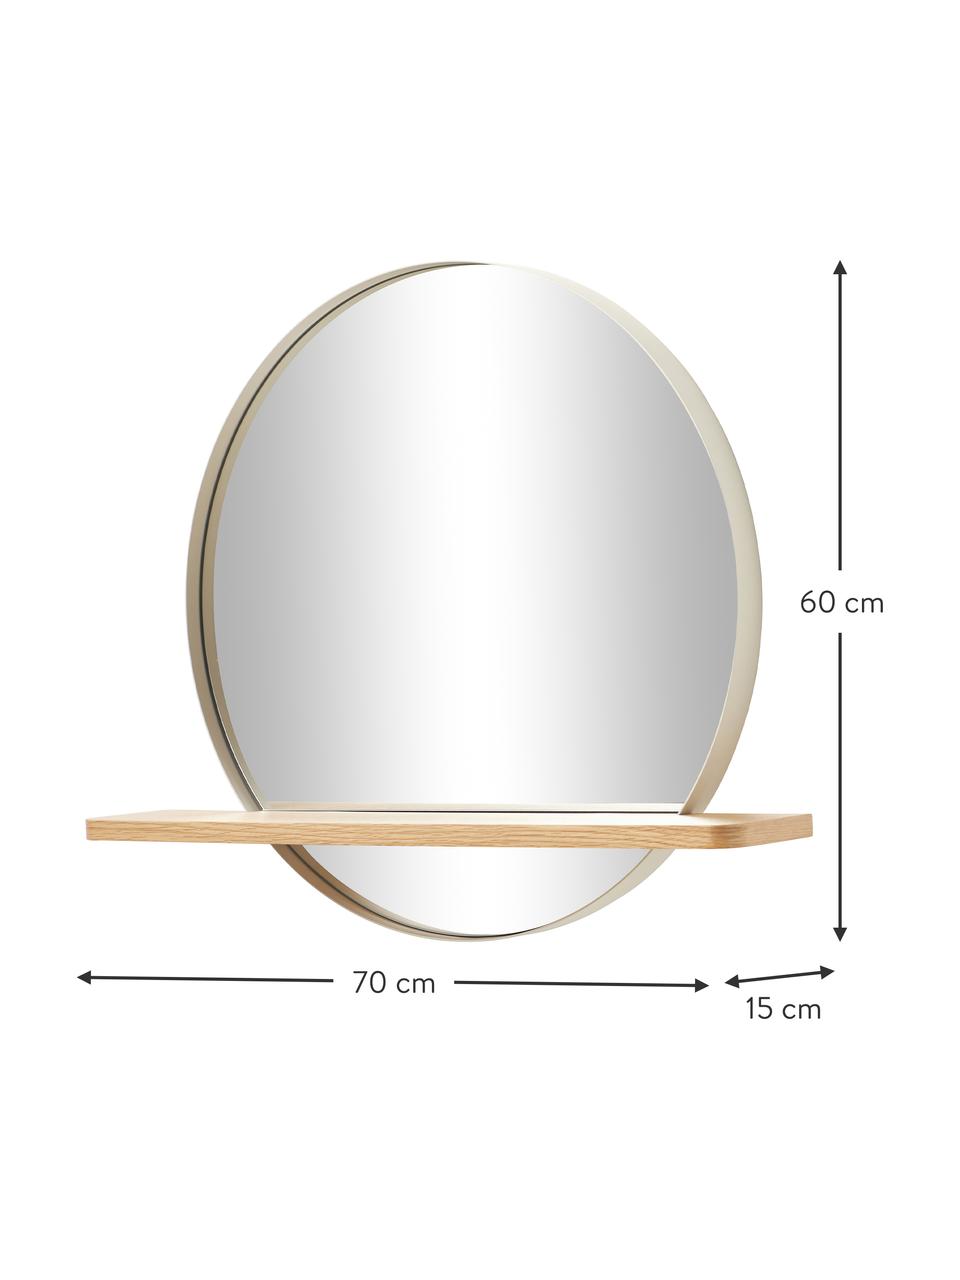 Kulaté nástěnné zrcadlo s dřevěnou poličkou a béžovým kovovým rámem Kenny, Béžová, dubová dýha, Š 70 cm, V 60 cm